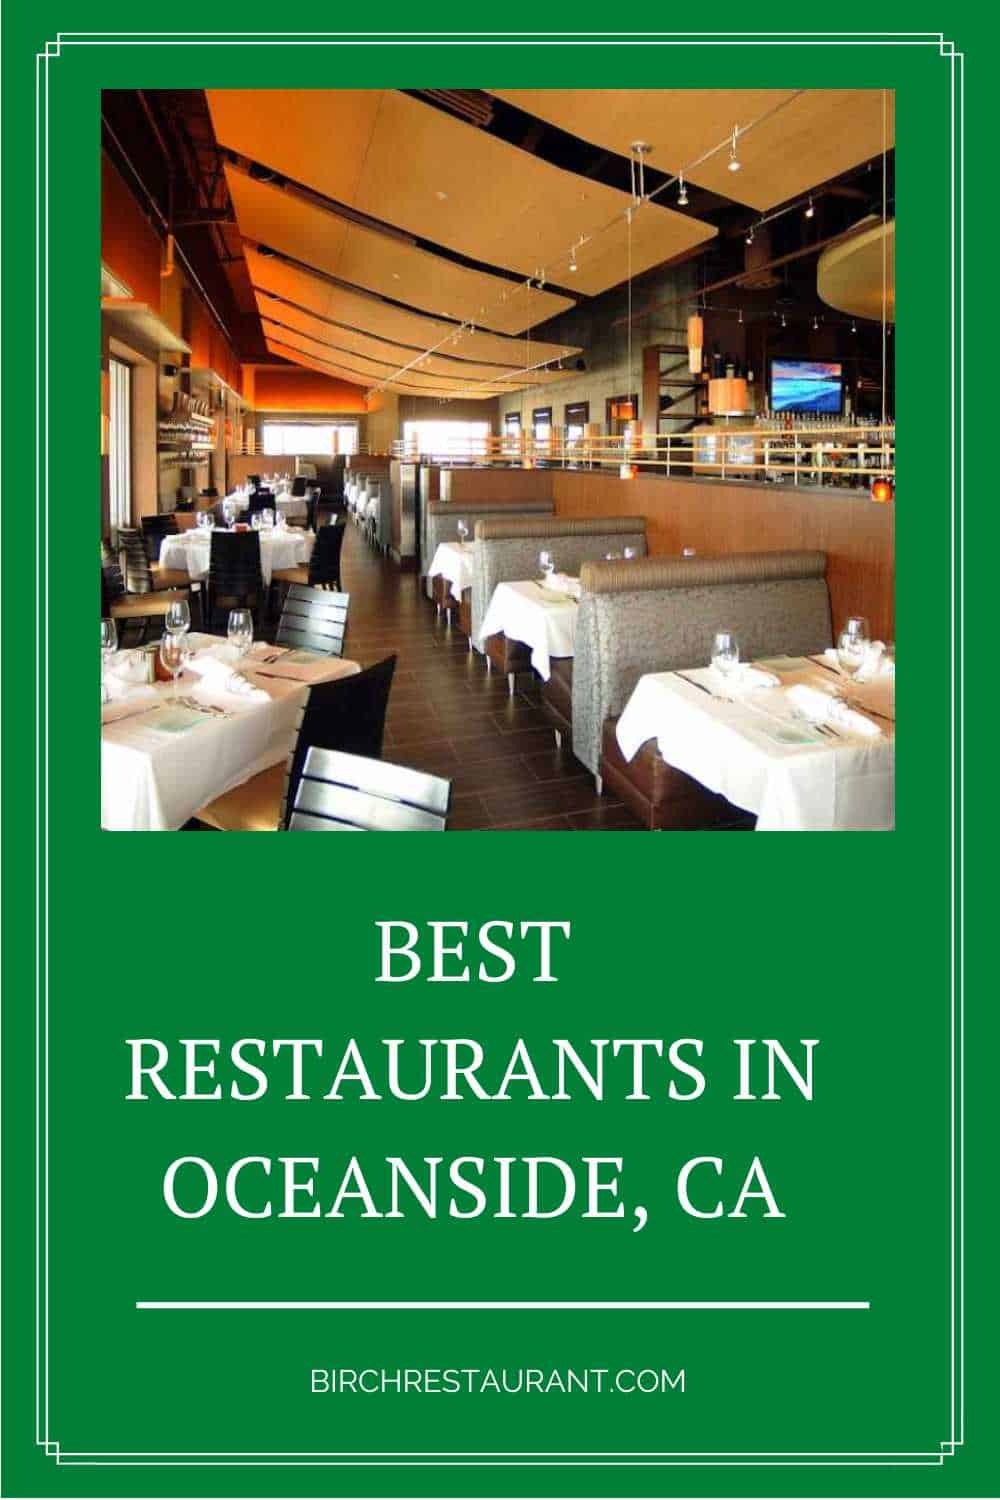 Best Restaurants in Oceanside, CA